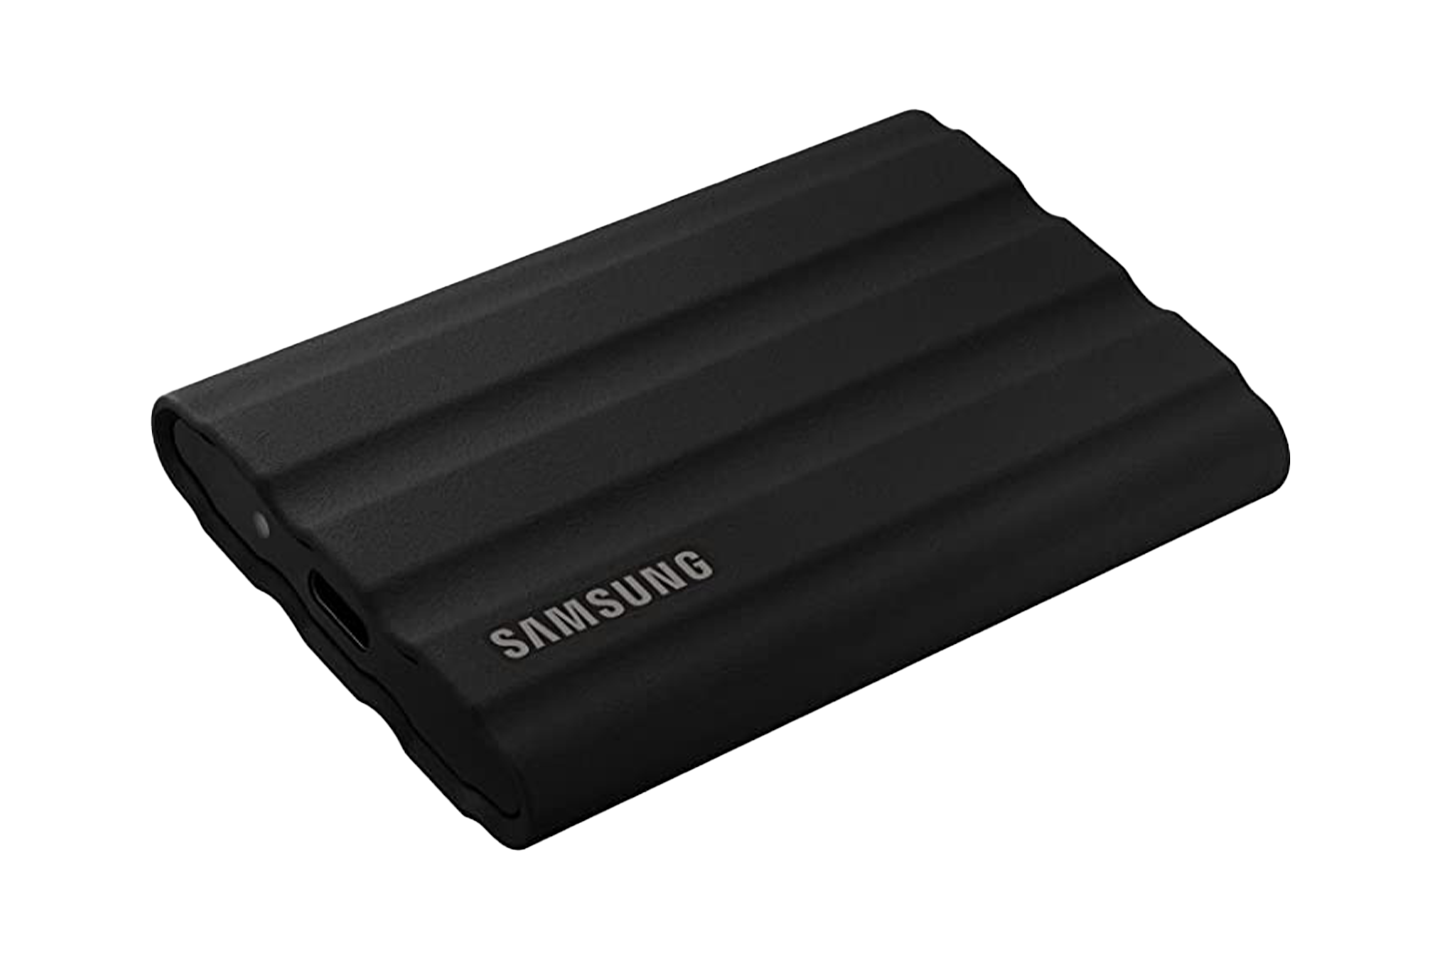 2.0TB SSD(Samsung T7 Shield)